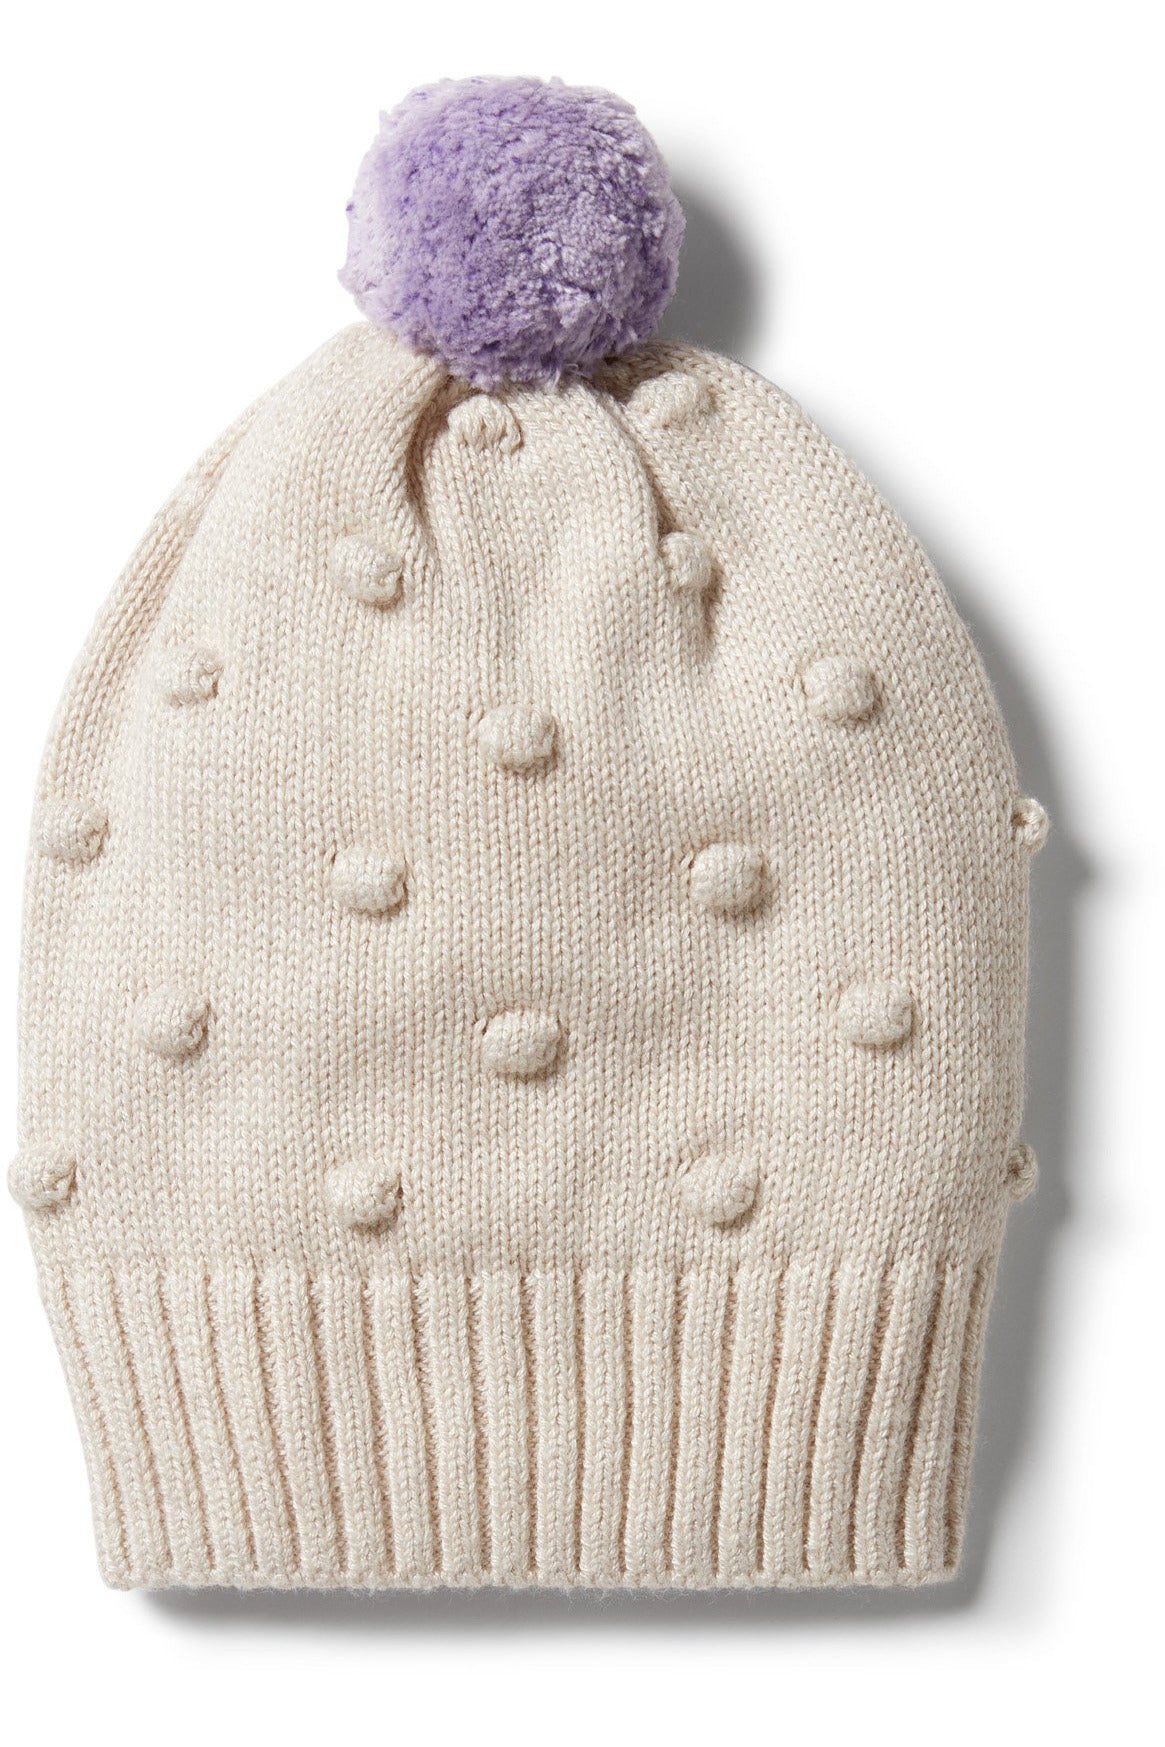 Knitted Spot Jacquard Hat - Oatmeal Melange